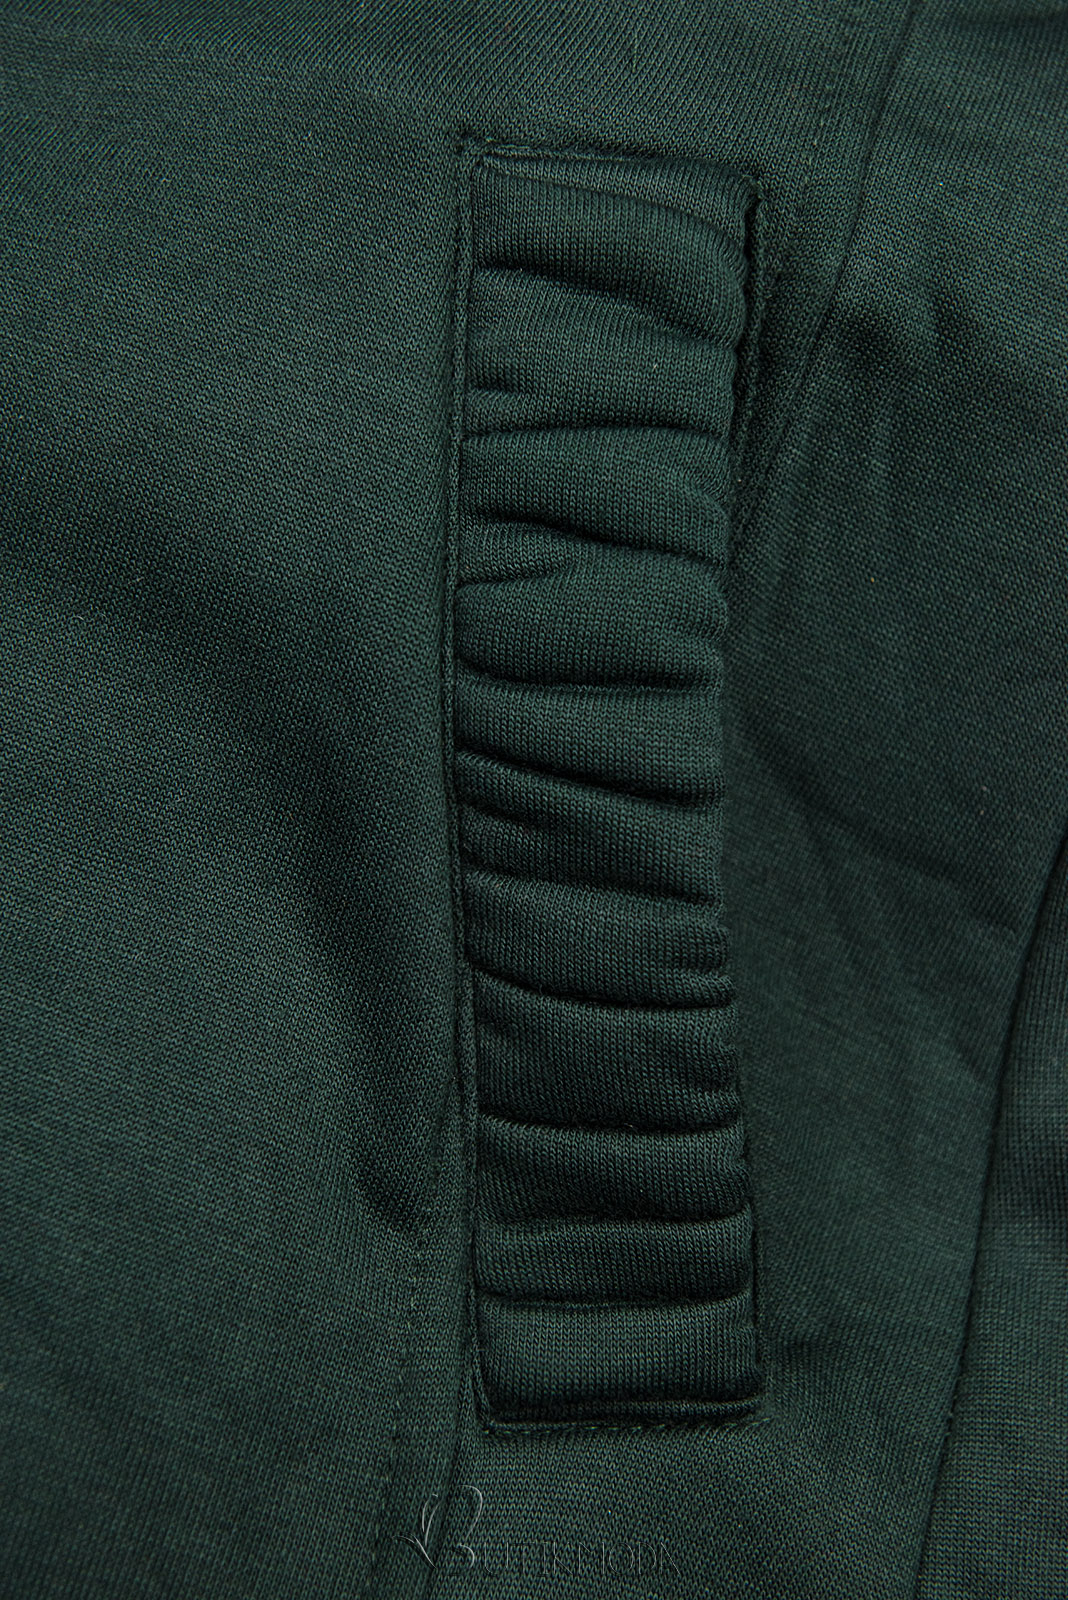 Smaragdzöld színű, LHD márkájú hosszított felső